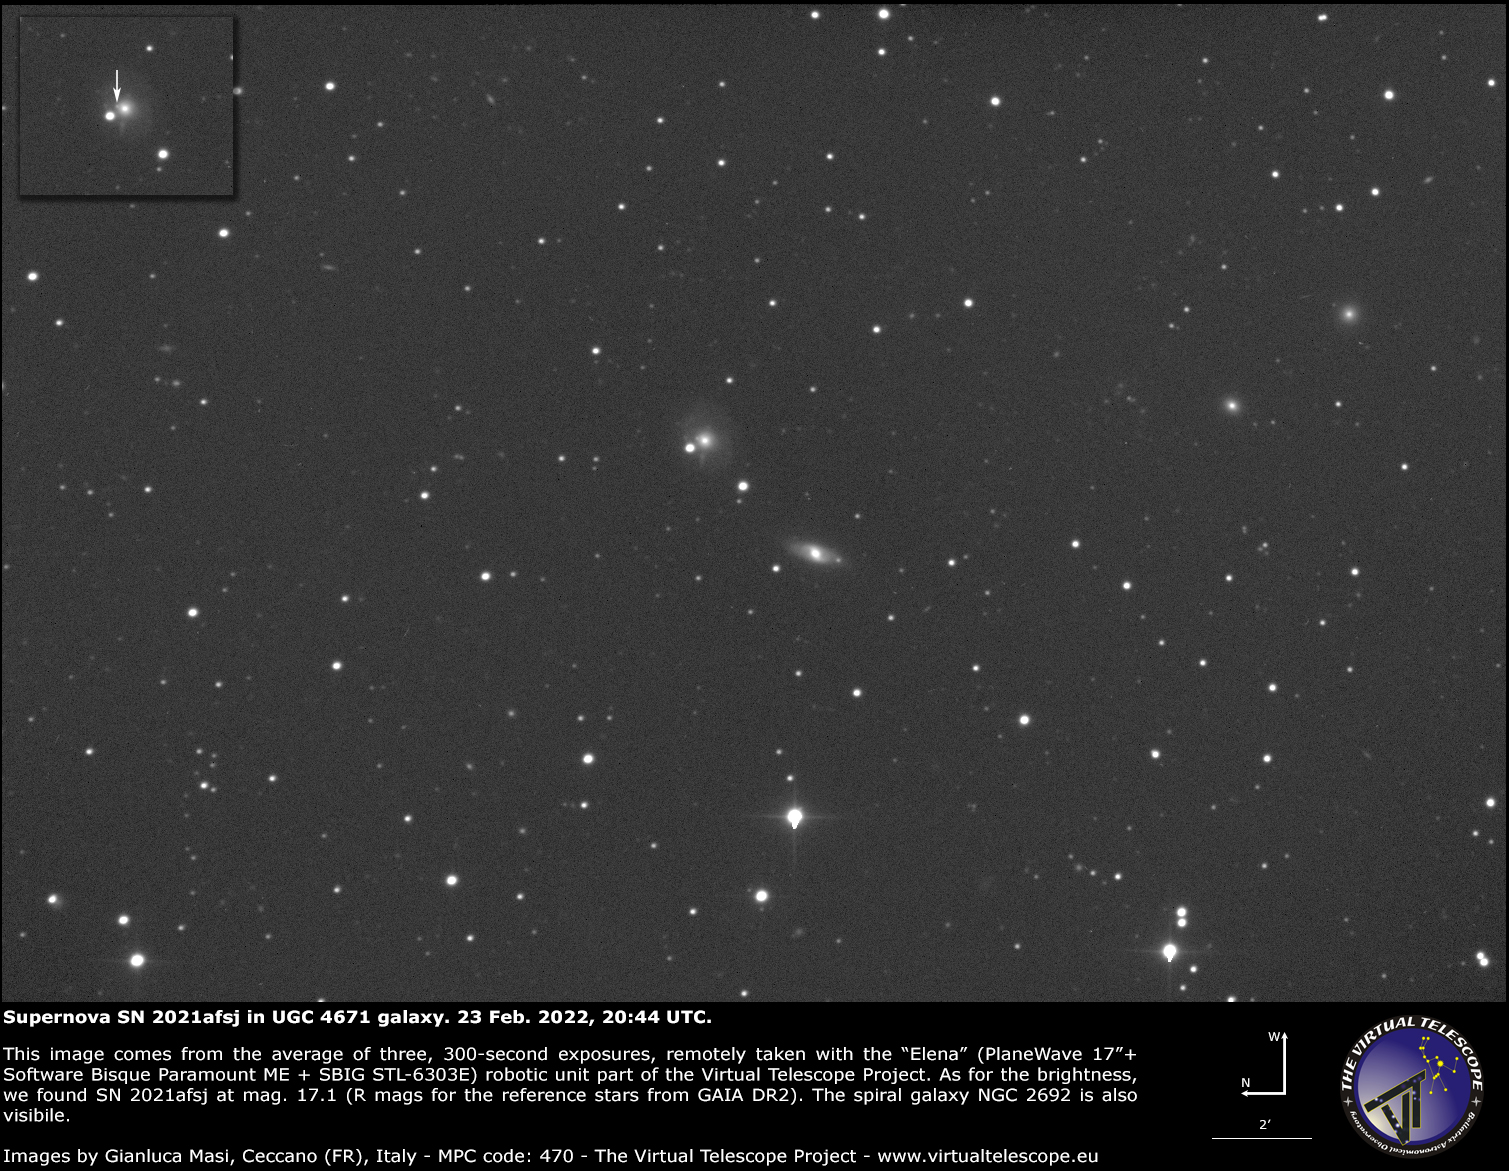 Supernova SN 2021afsj in UGC 4671 galaxy: 23 Feb. 2022.